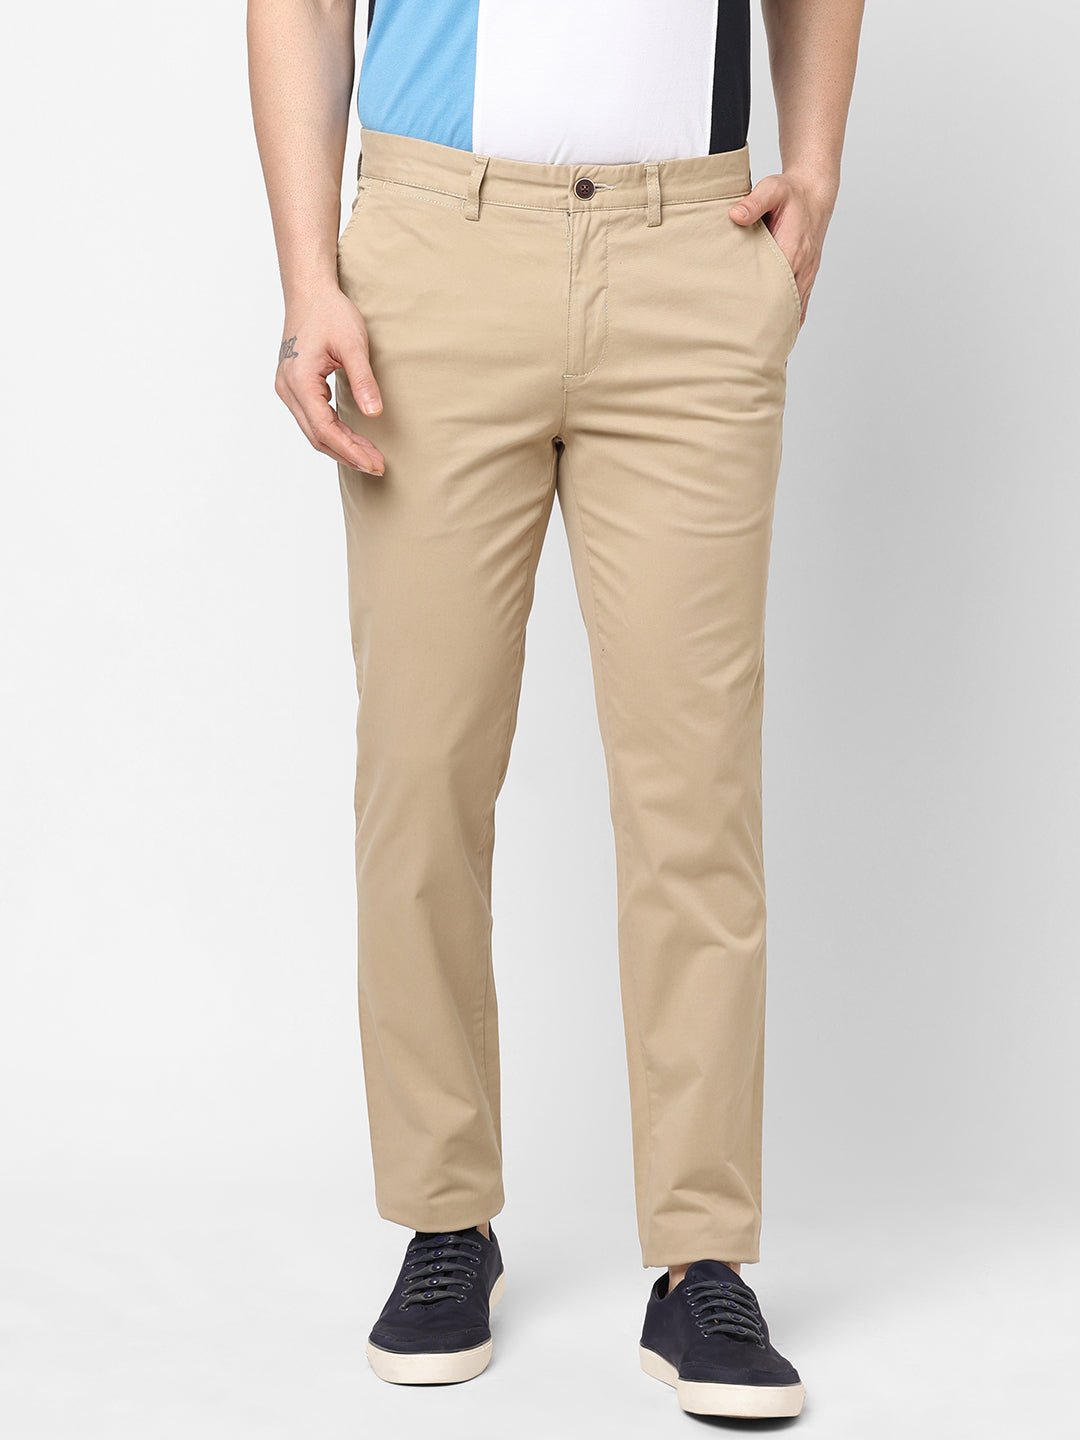 Men's Khaki Cotton Lycra Slim Fit Pant